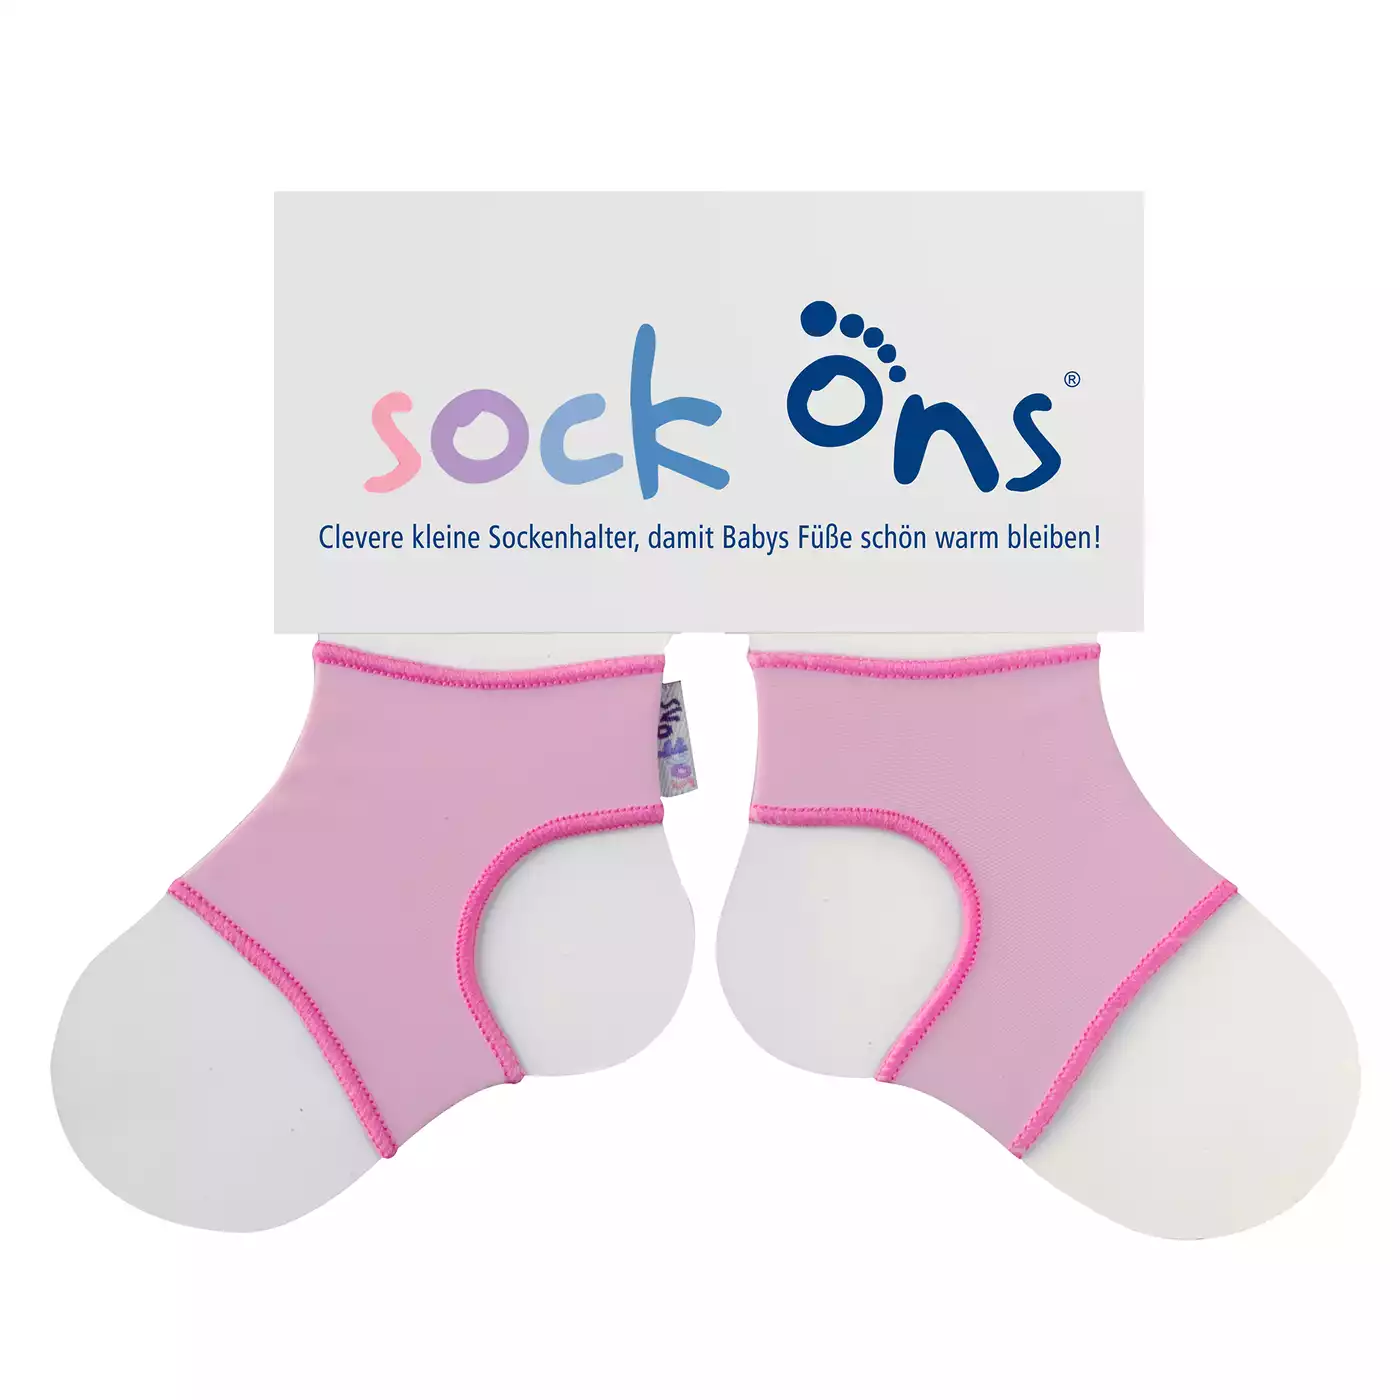 Sock Ons Größe L (6-12 Monate) FUNNY Pink 2000564949706 3